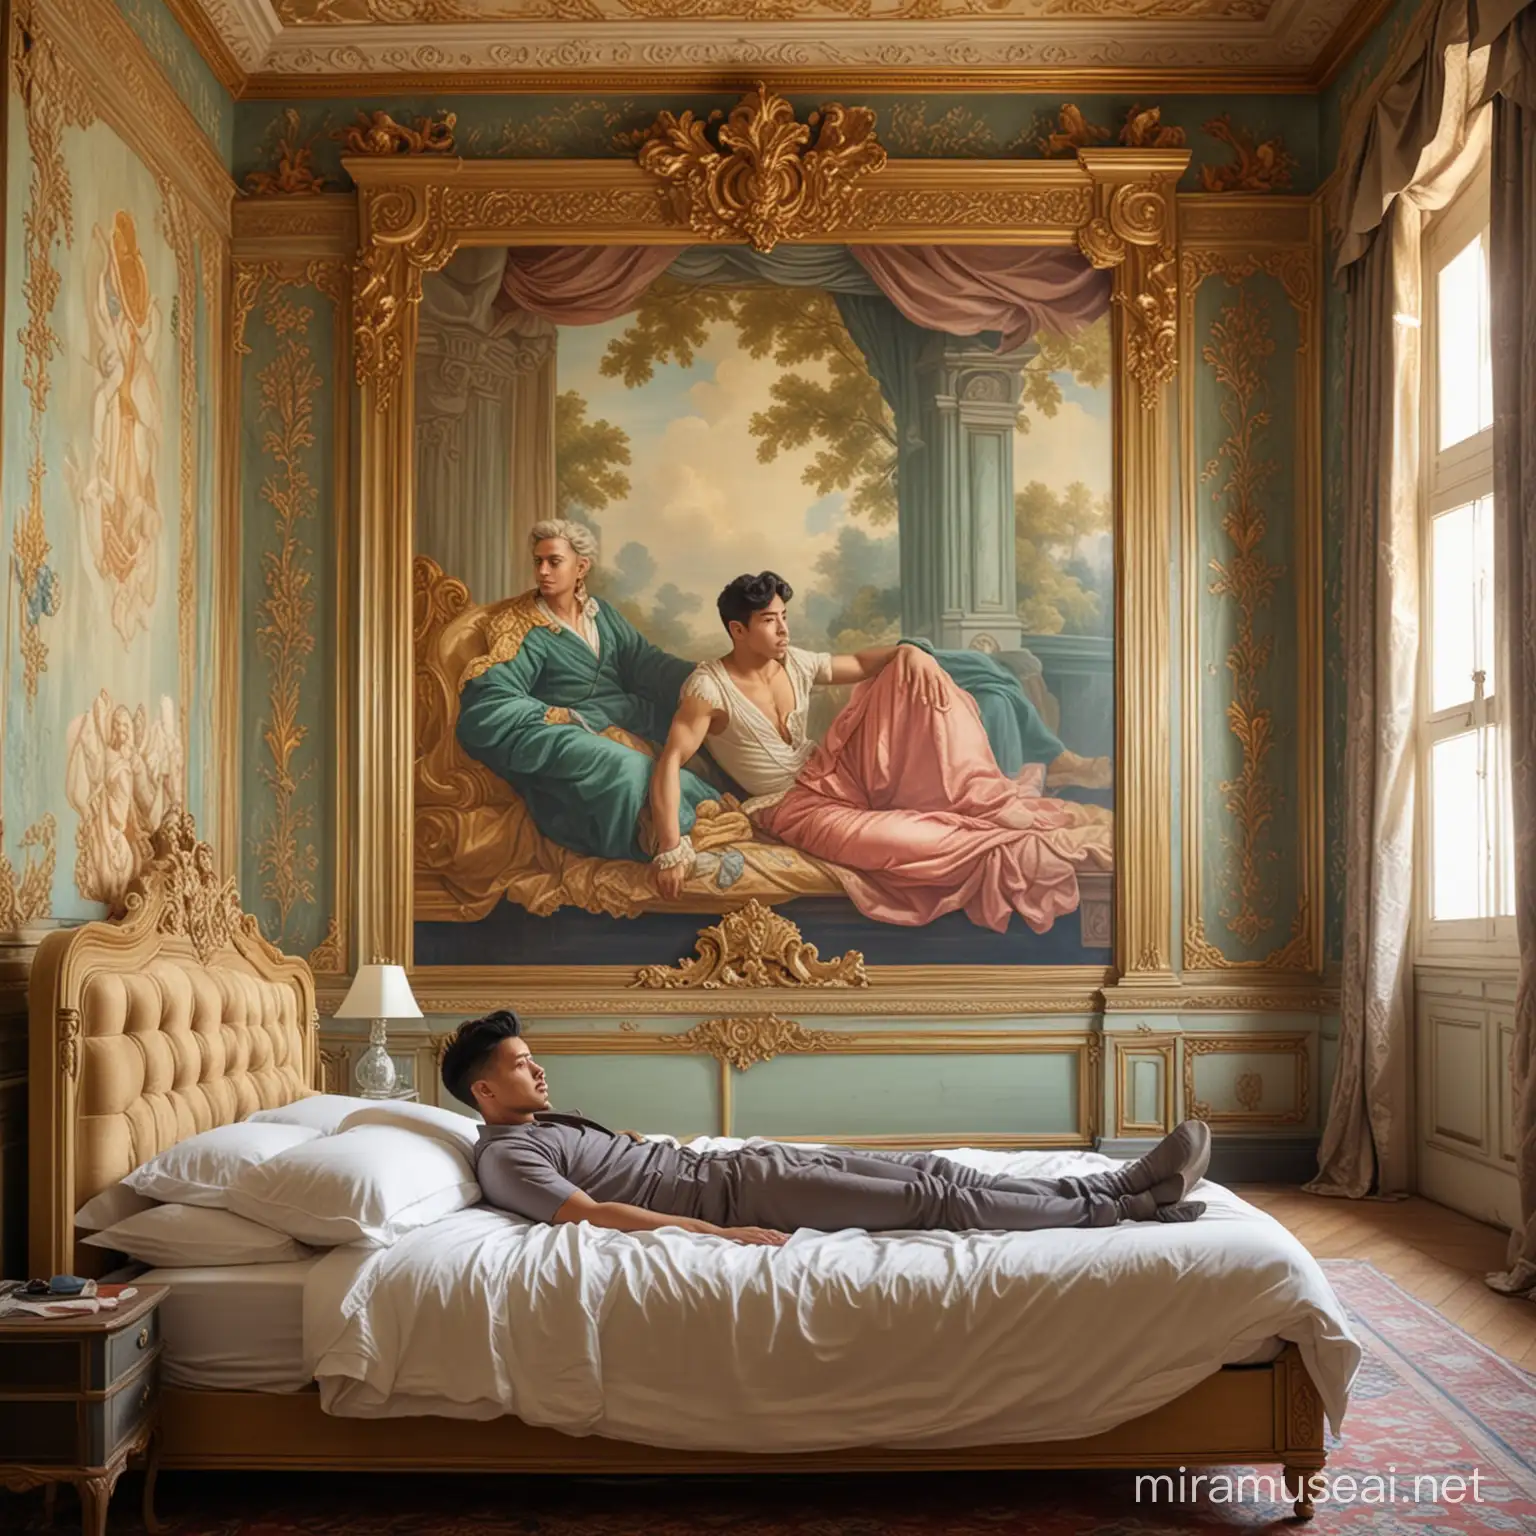 Pria tampan indonesia terbaring dalam pemandangan malam kamar tidur bergaya rococo di dalam gedung art deco dengan Renaissance mural wall painting. Ultra HD photography quality